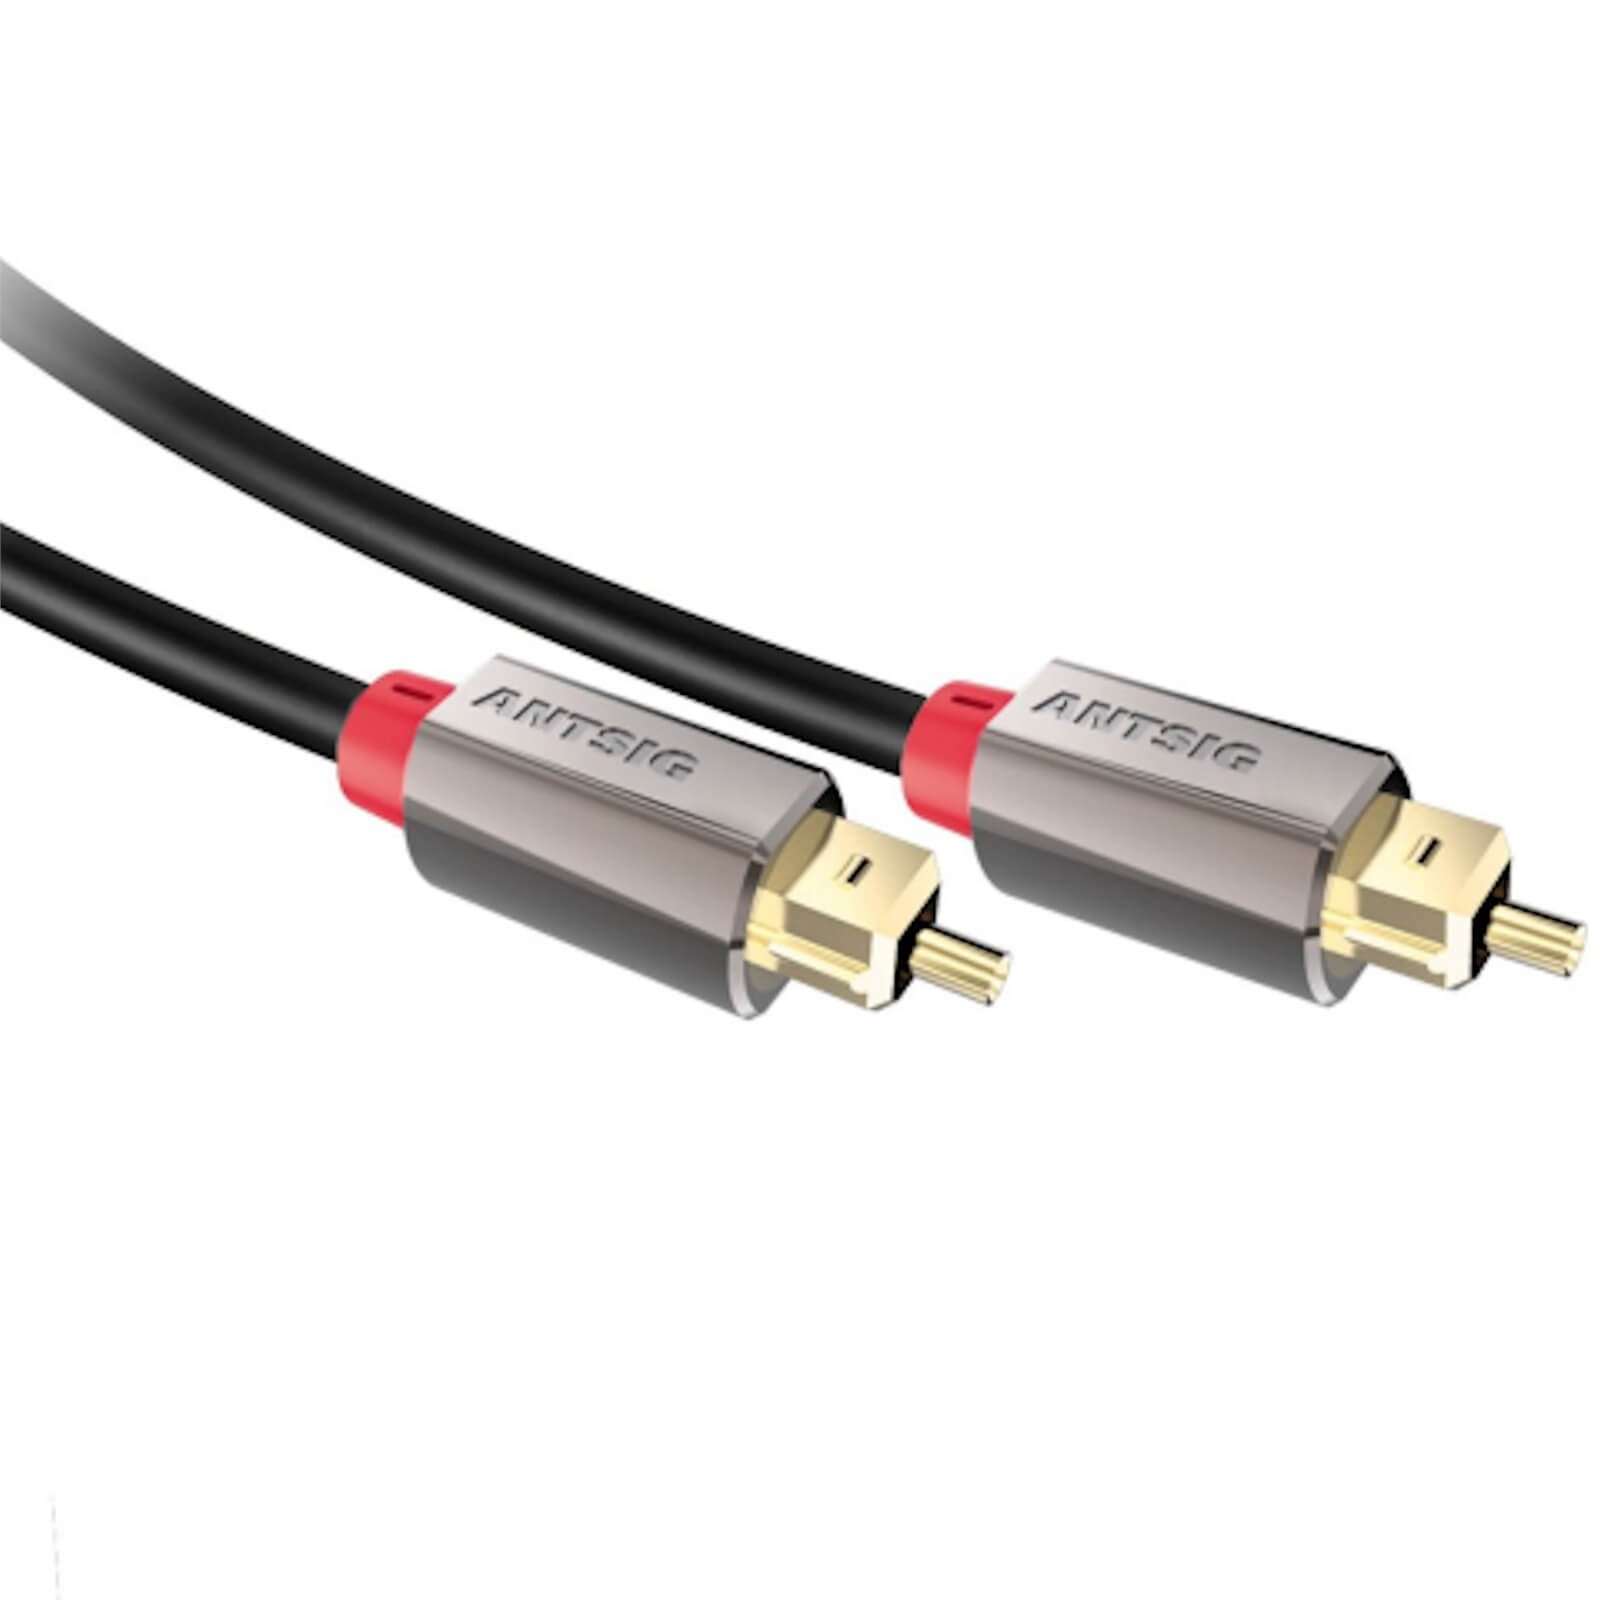 Photo of Antsig Toslink Premium Fibre Optic Audio Cable 2m